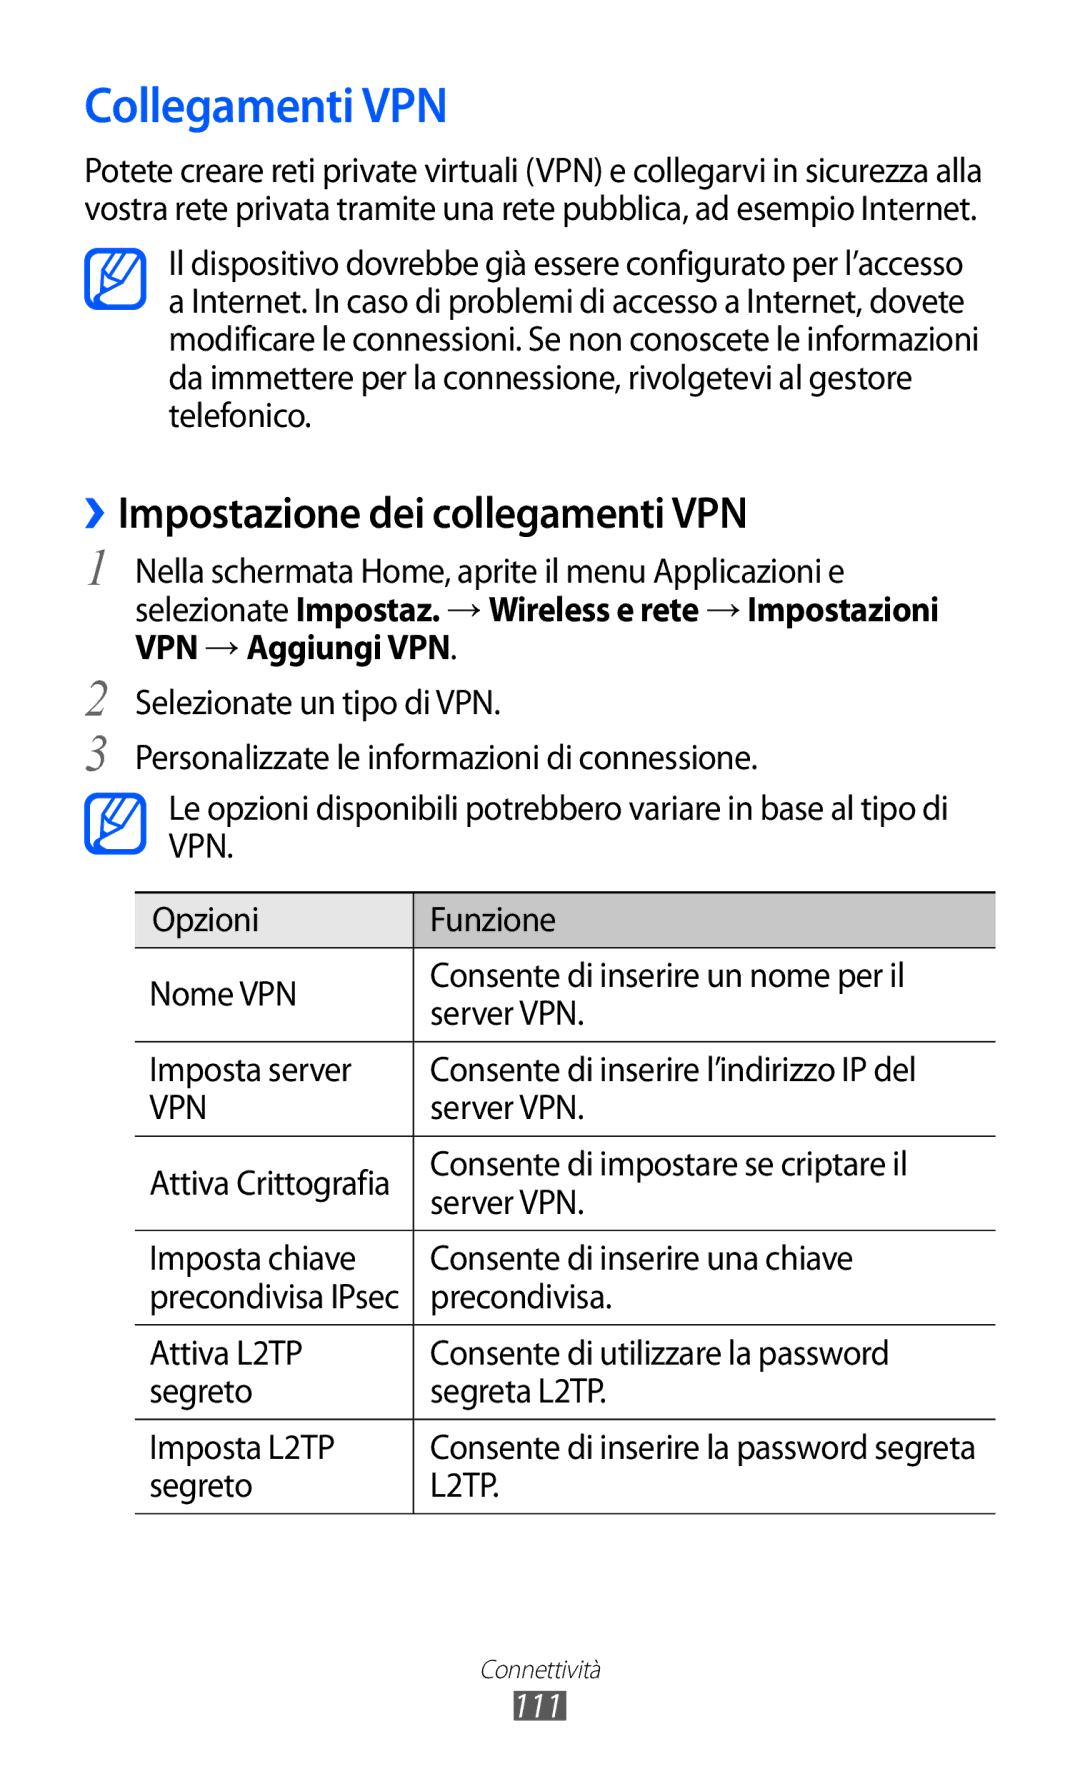 Samsung GT-I8150FKAITV, GT-I8150EWAITV manual Collegamenti VPN, ››Impostazione dei collegamenti VPN, 111 